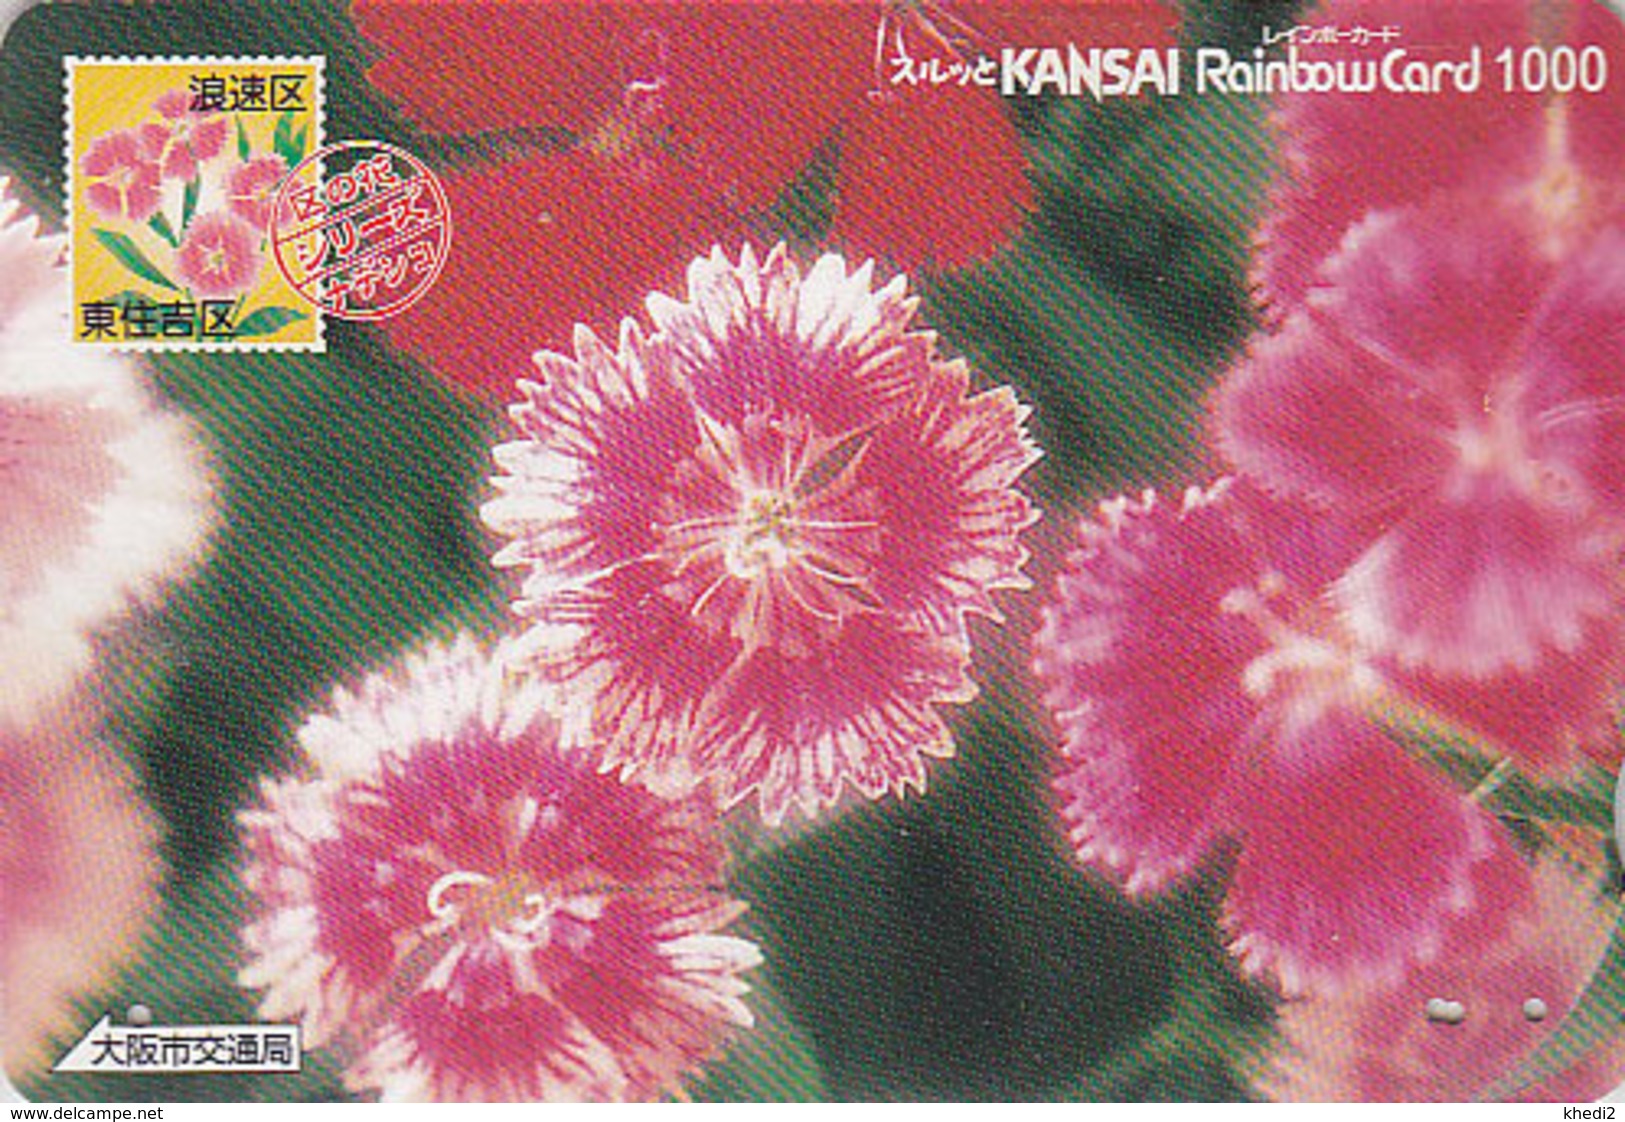 Carte Prépayée Japon - FLEUR - OEILLET Sur TIMBRE / Série 01/16 - FLOWER On STAMP Japan Rainbow Card - 2456 - Timbres & Monnaies